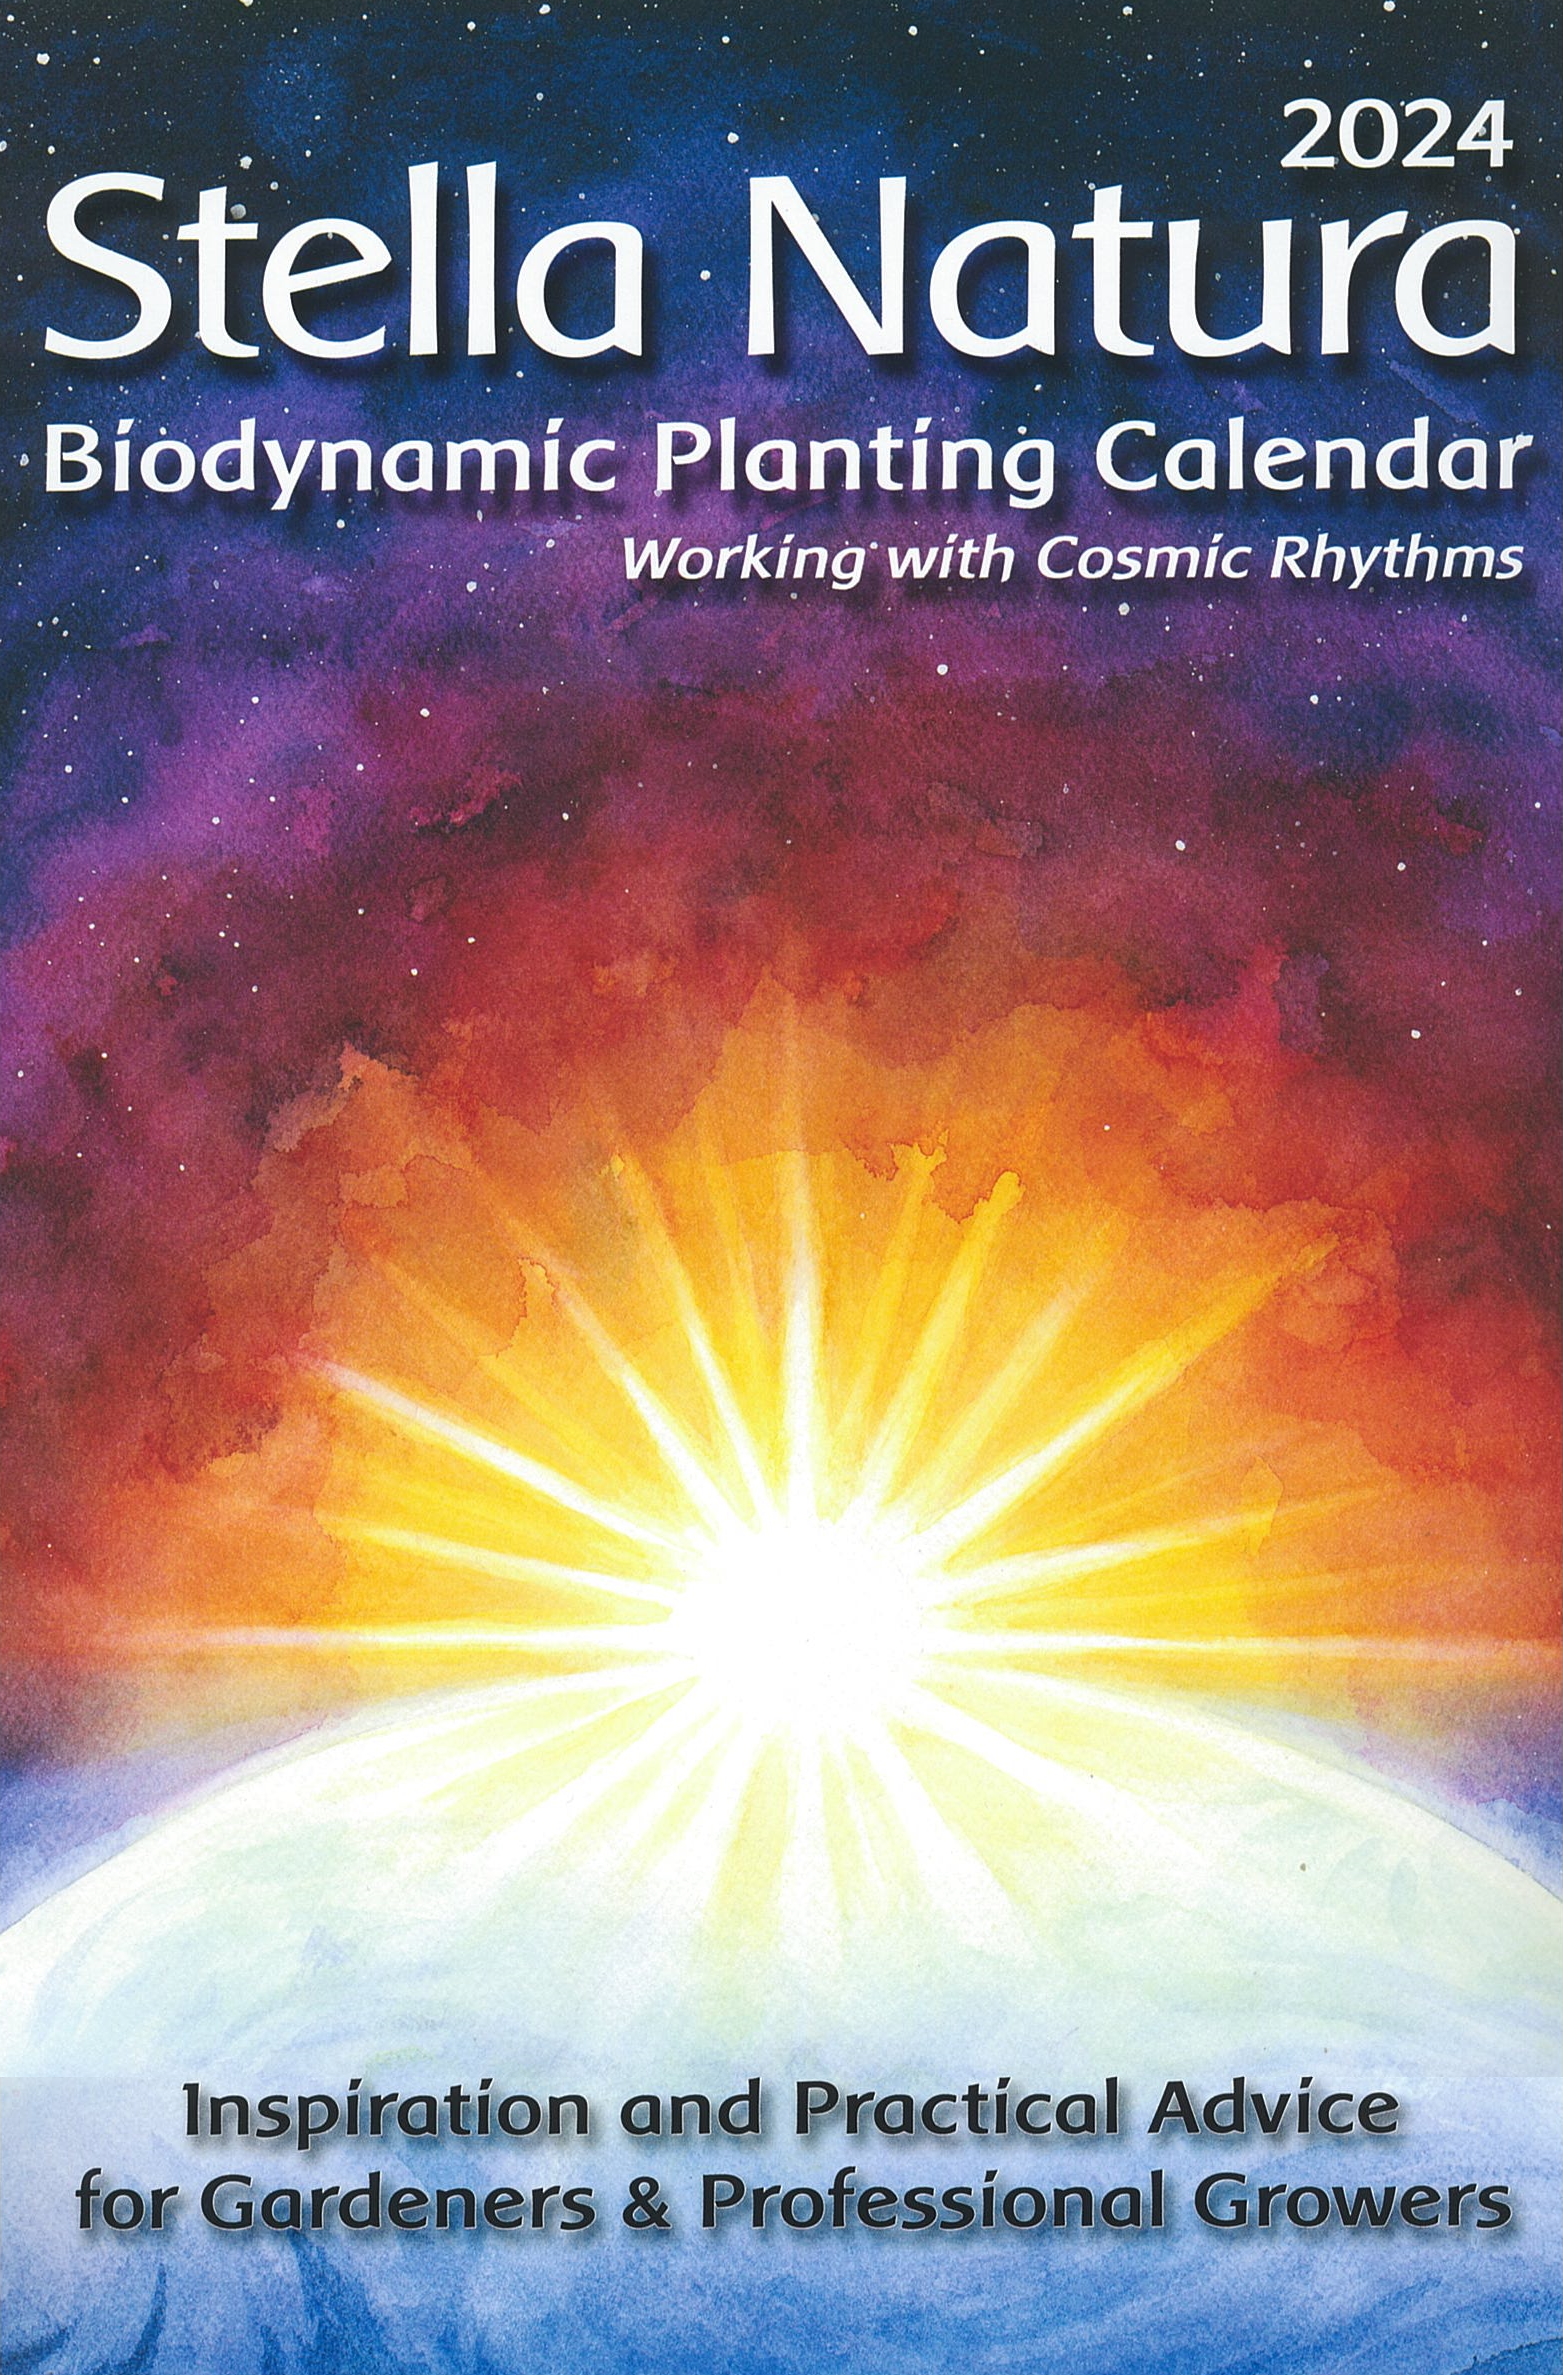 2024 Guide des fleurs et de leur saison, le calendrier 2024